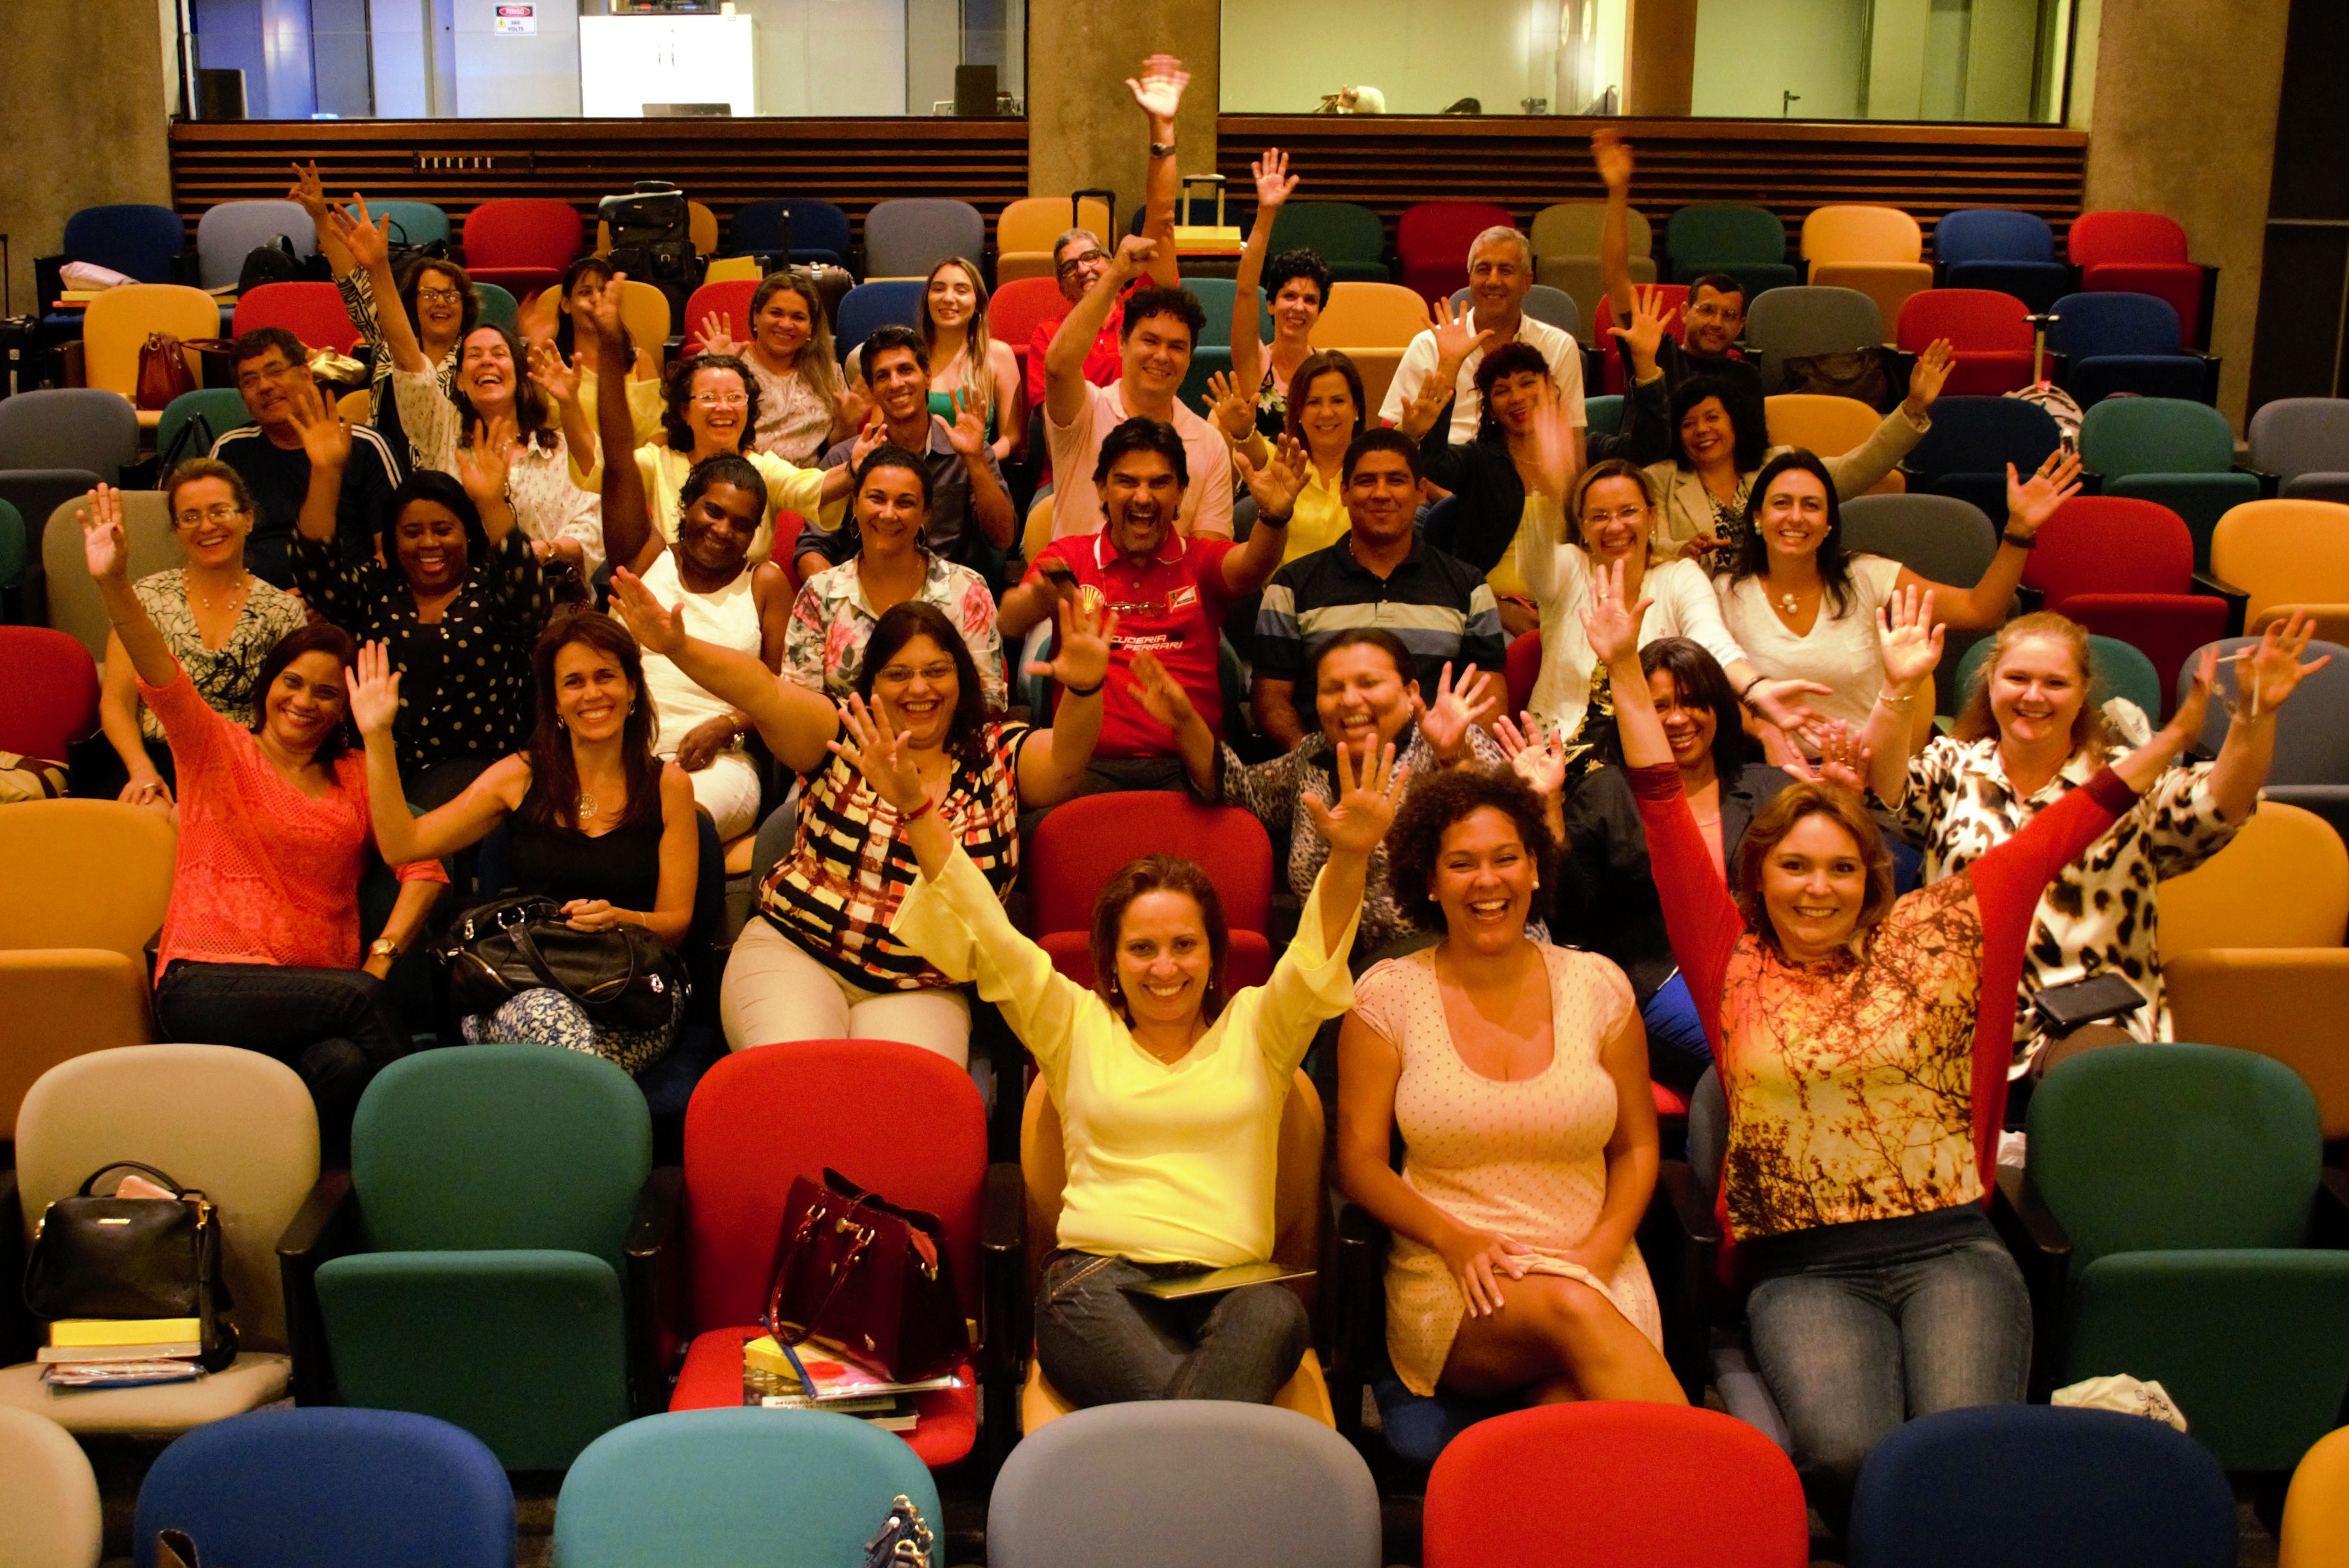 : Homens e mulheres animados e com os braços erguidos posam para foto em auditório com cadeiras coloridas.